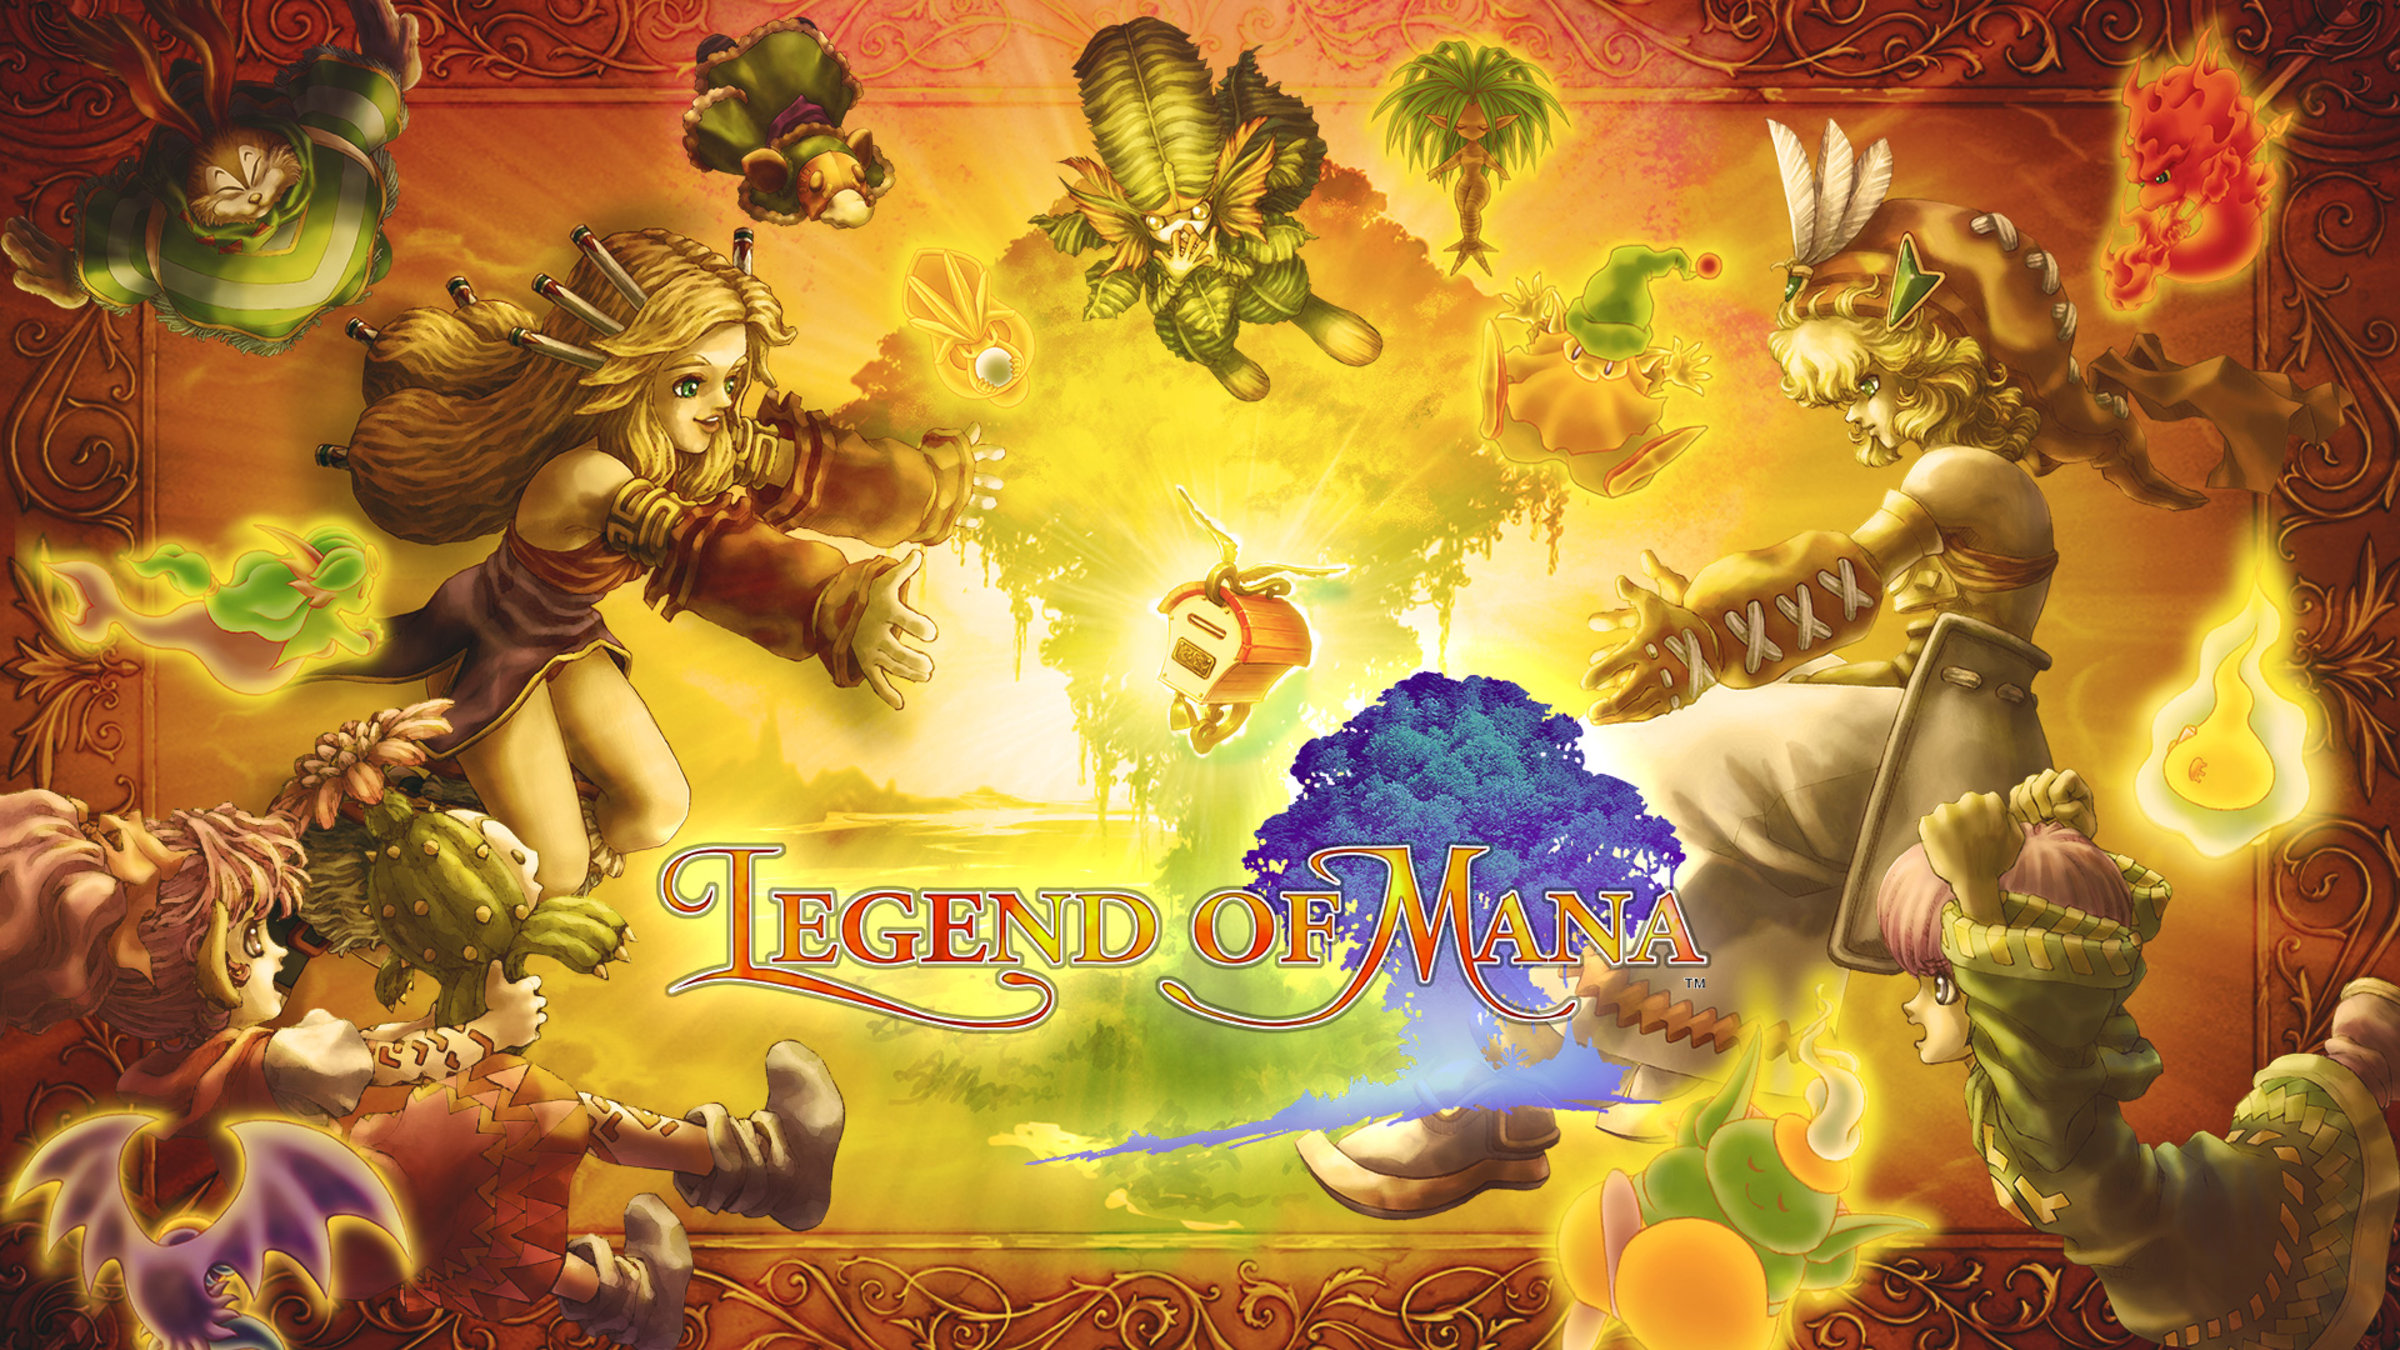 Legend of Mana for Nintendo Switch - Nintendo Official Site